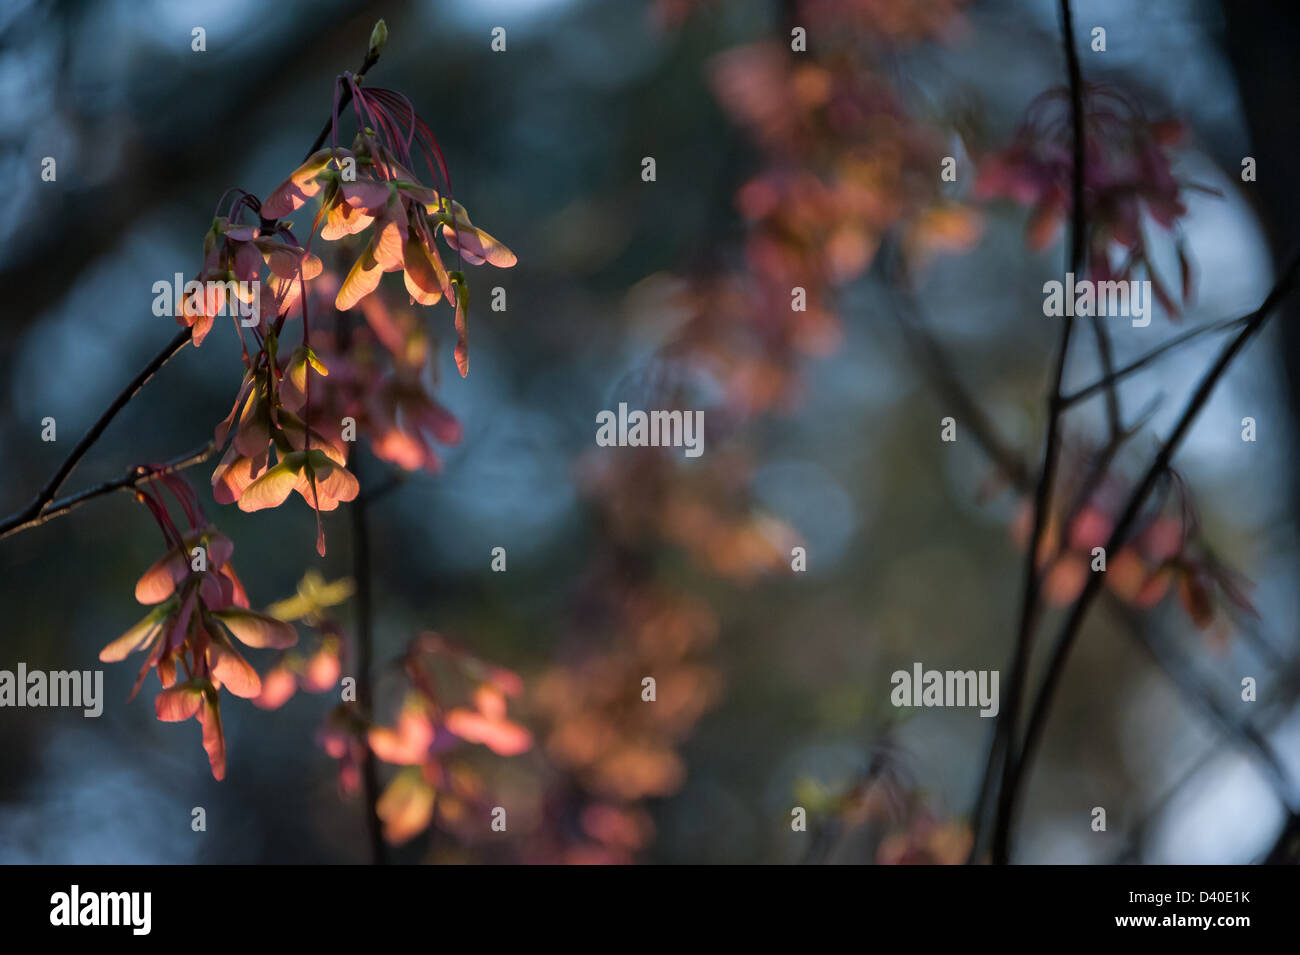 Farbenprächtiger roter Ahorn (Acer rubrum) samaras (geflügelte Samen), die am späten Nachmittag bei strahlendem Sonnenlicht in Atlanta, Georgia, glühten. Stockfoto